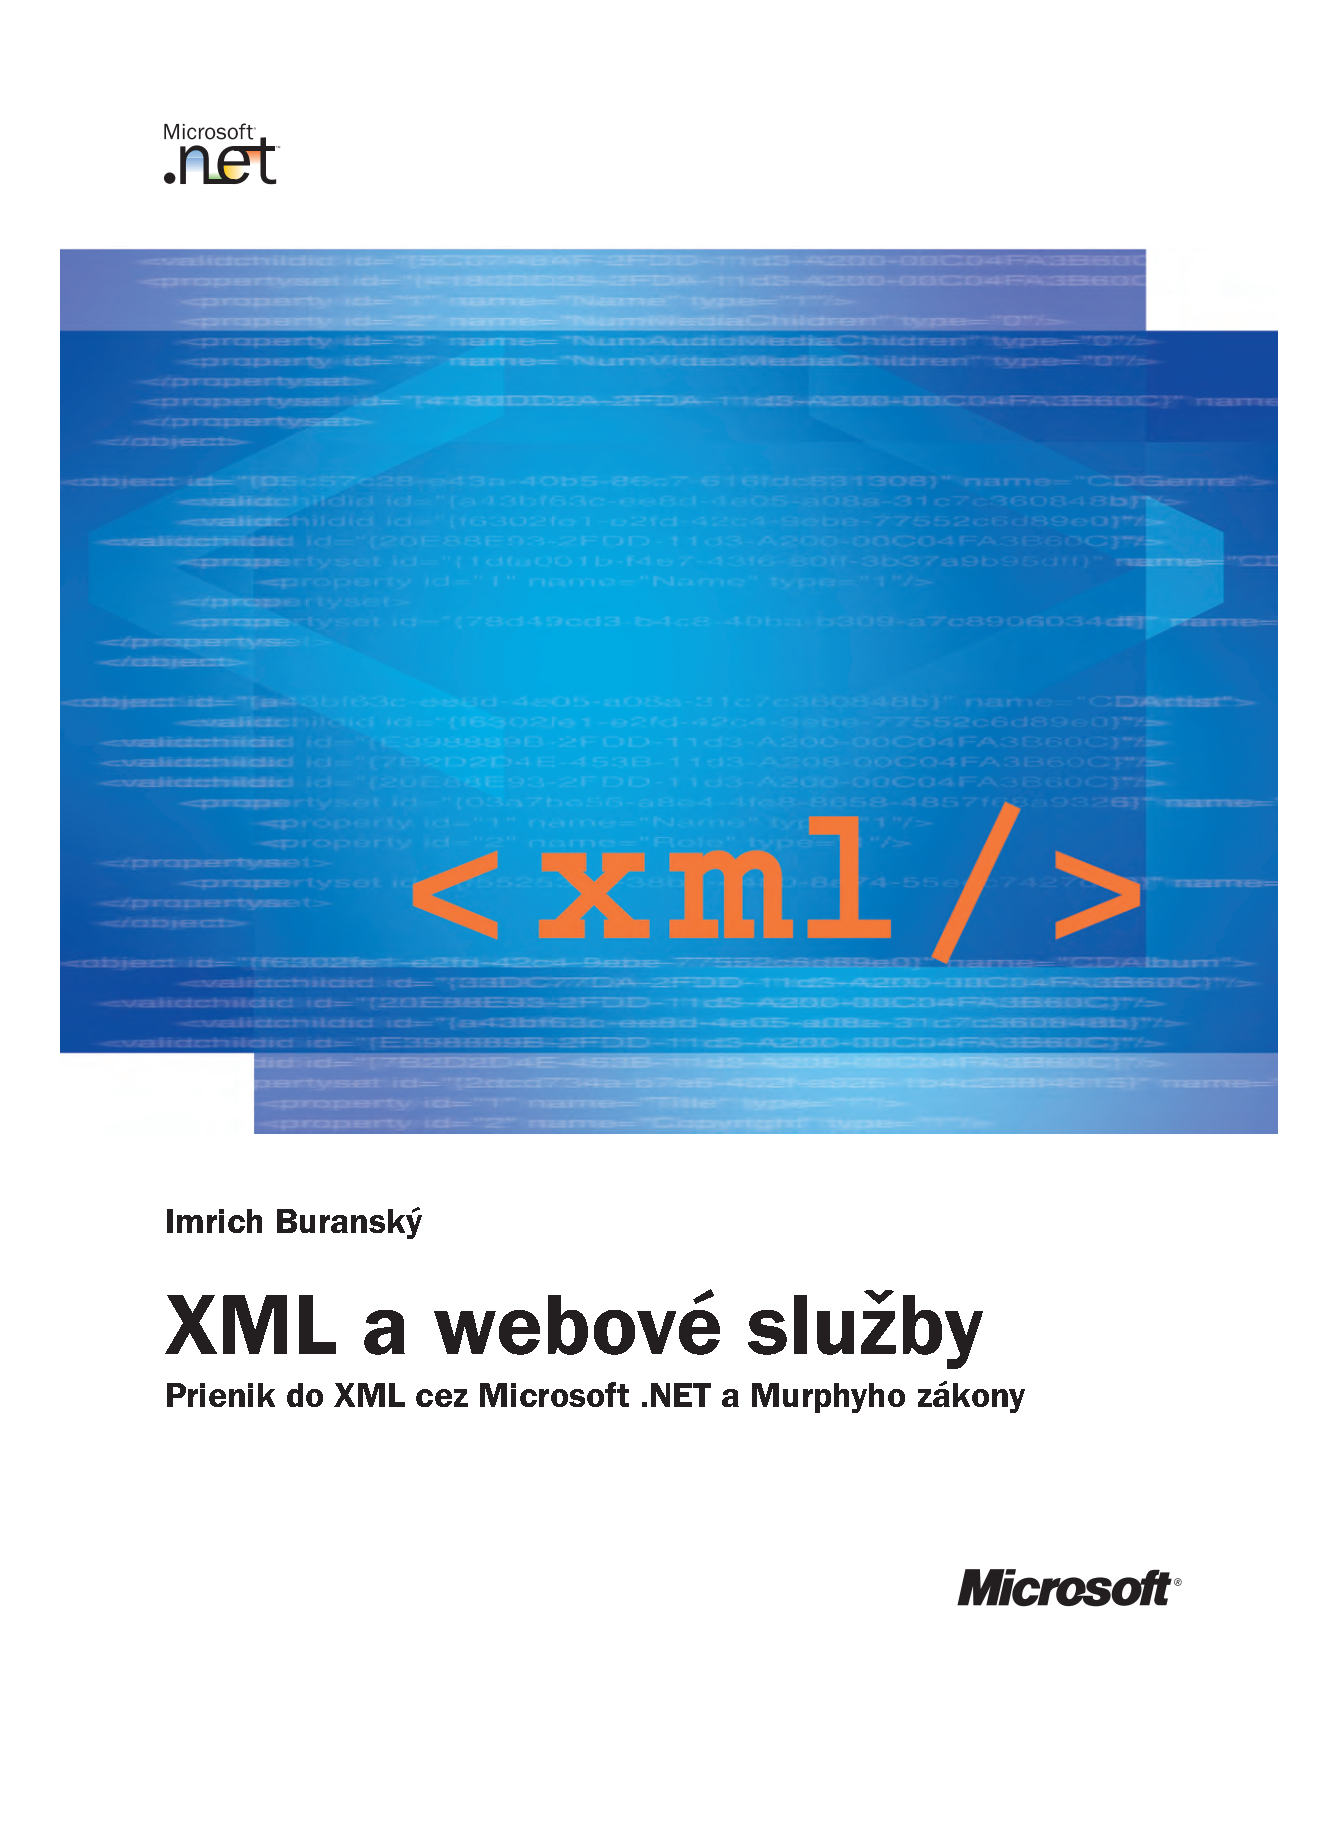 XML a webové služby